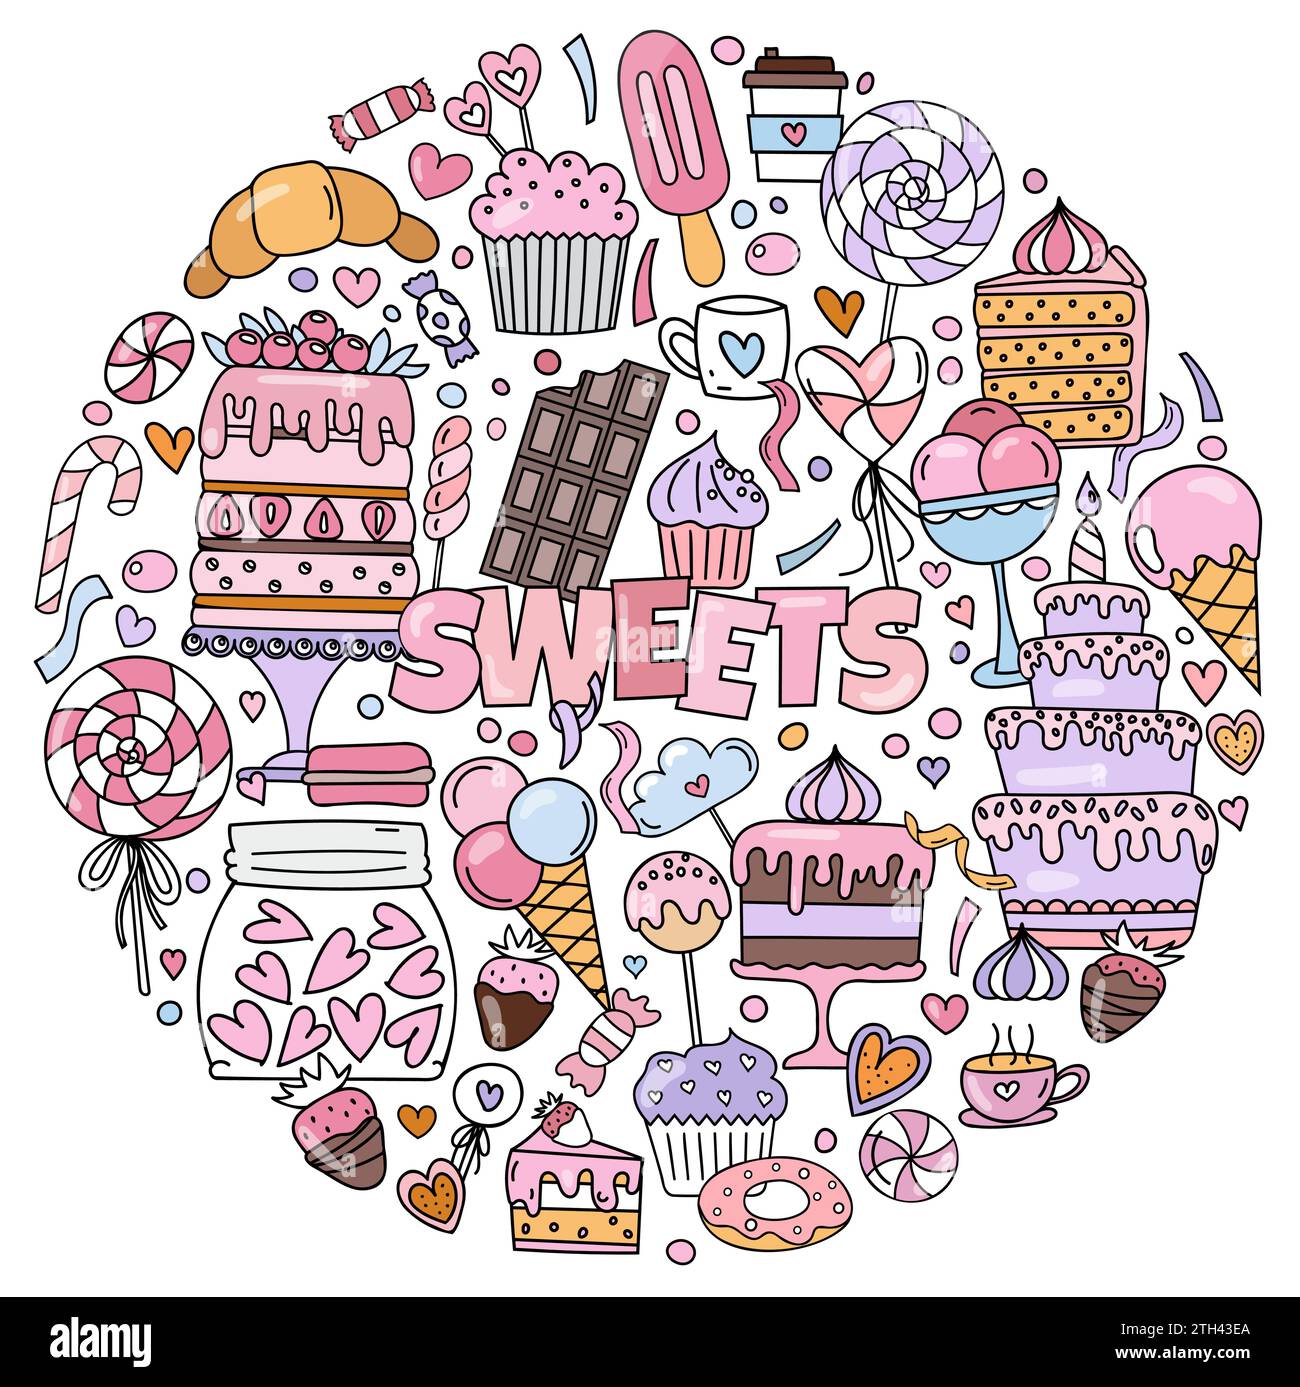 Doodles dessinés à la main et colorés sur le thème des bonbons, y compris Un ensemble de photos avec gâteaux, bonbons et autres friandises pour la coloration stress-relief Illustration de Vecteur